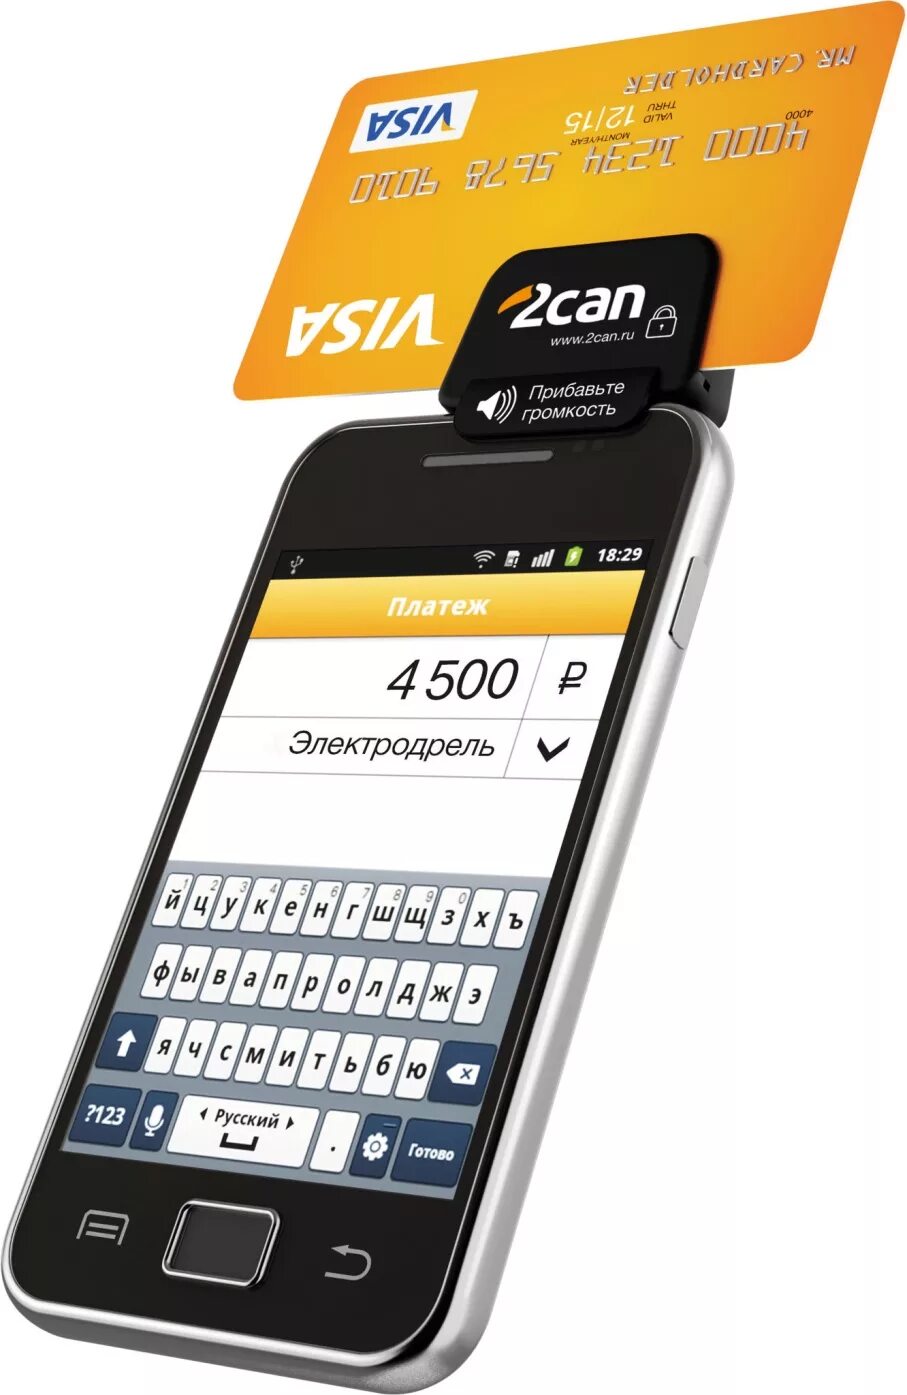 Мобильный терминал для оплаты. POS-терминал 2can v20. Платежный терминал 2can. Мобильный терминал эквайринга. 2can терминал.